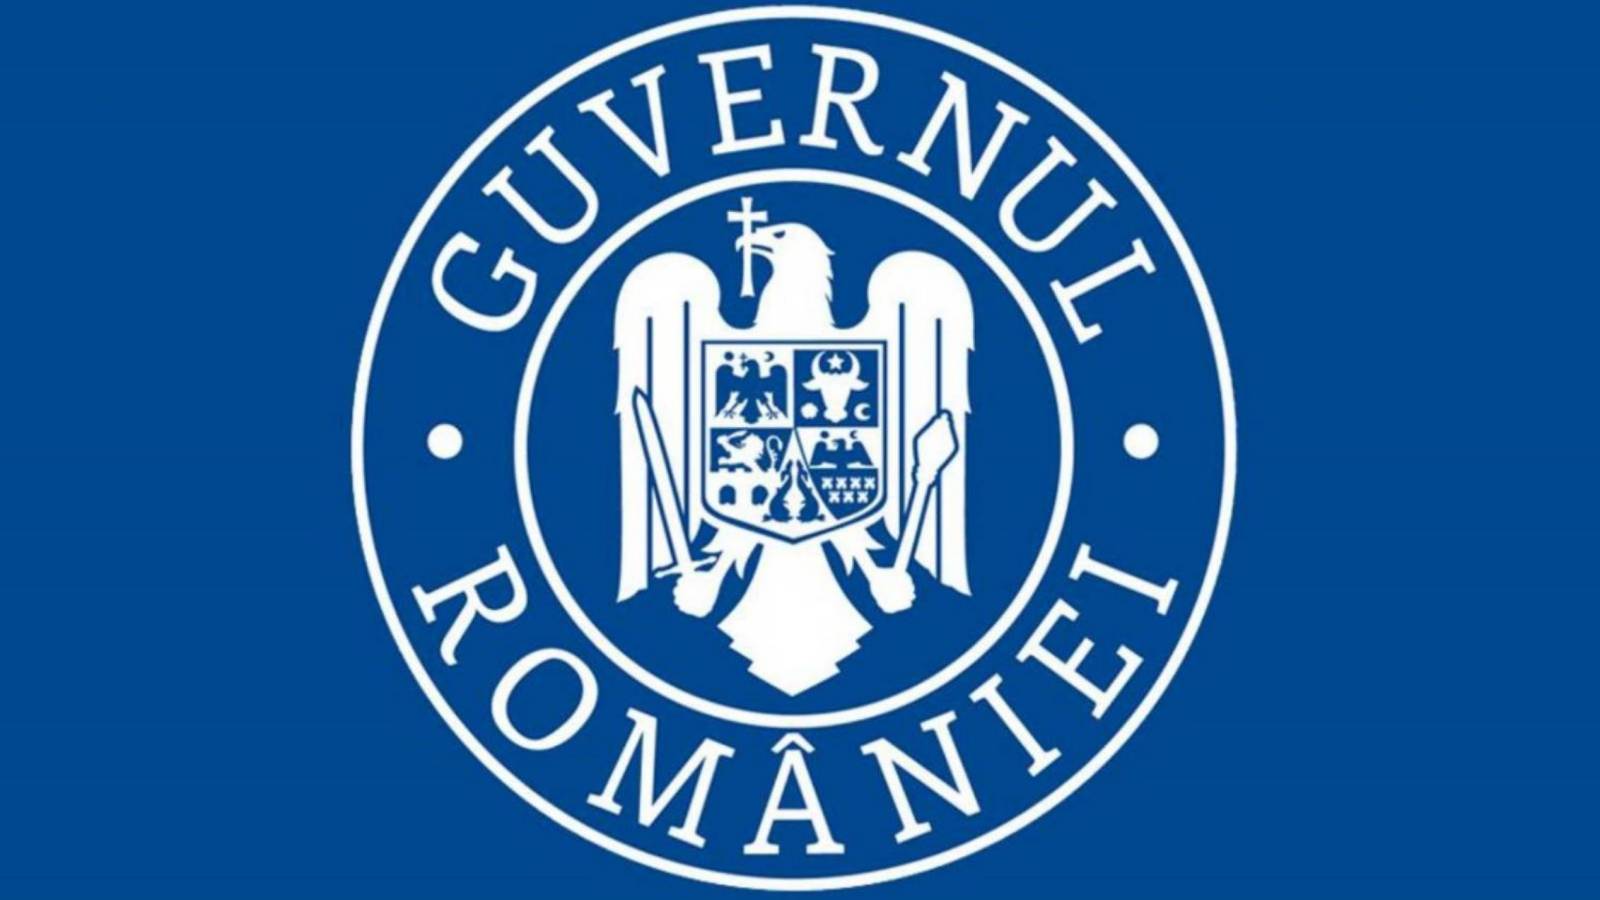 Rząd rumuński ogranicza obywateli rumuńskich